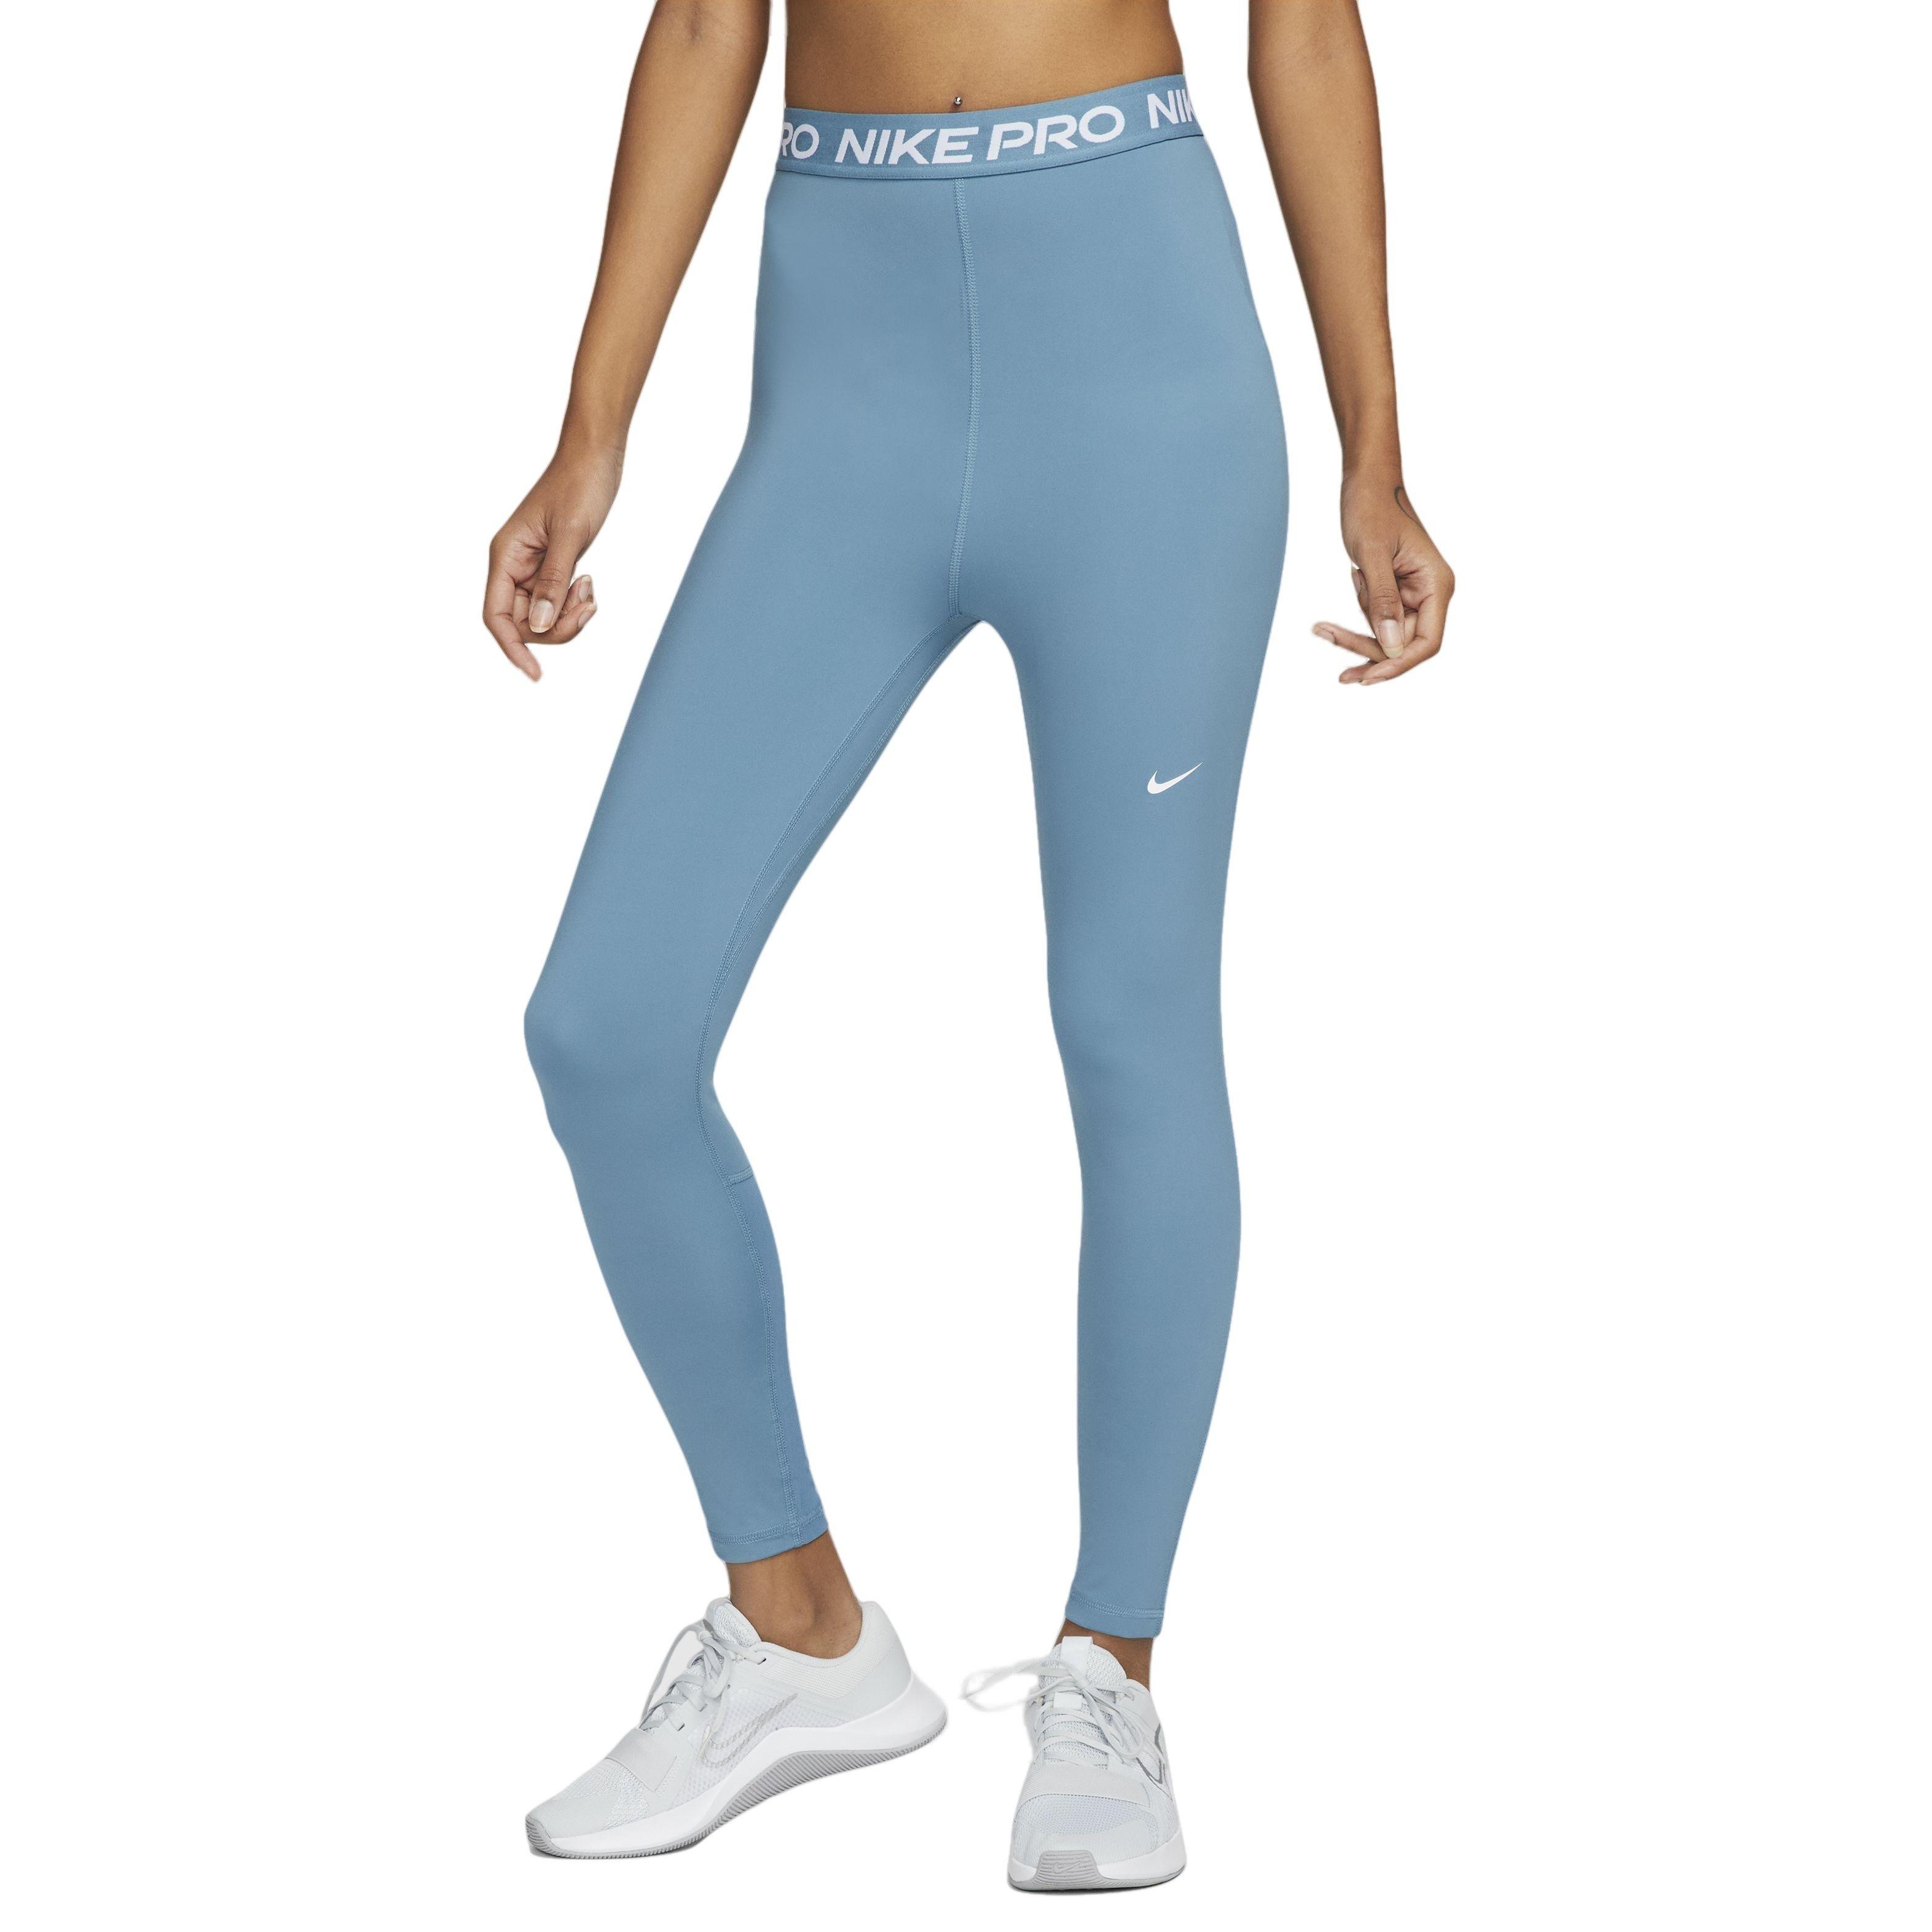  Jordan Women's Celestine Blue Leggings - XS : Clothing